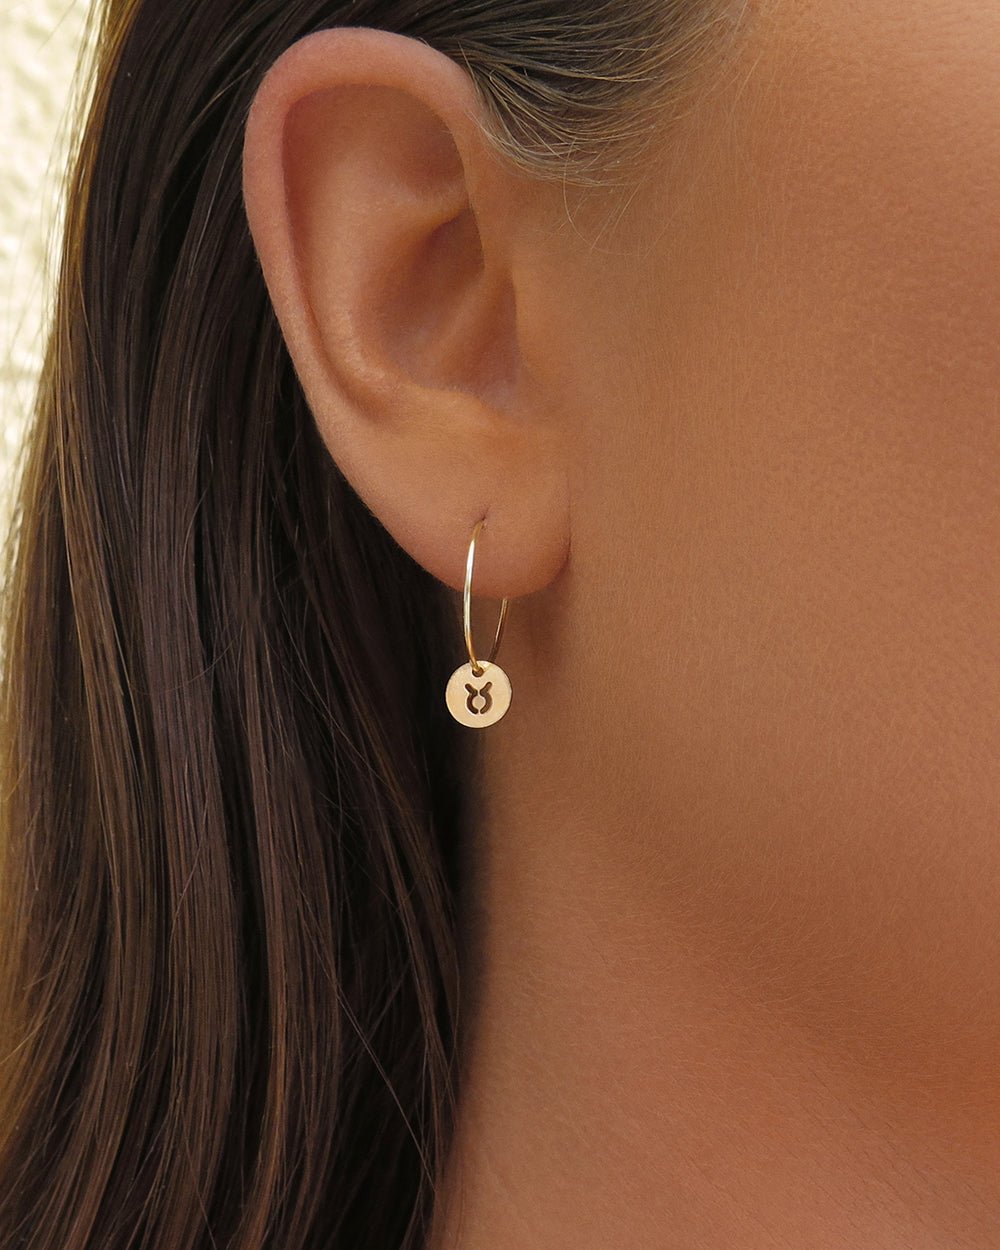 ZODIAC HOOP EARRINGS - The Littl - 14k Yellow Gold Fill - Earrings